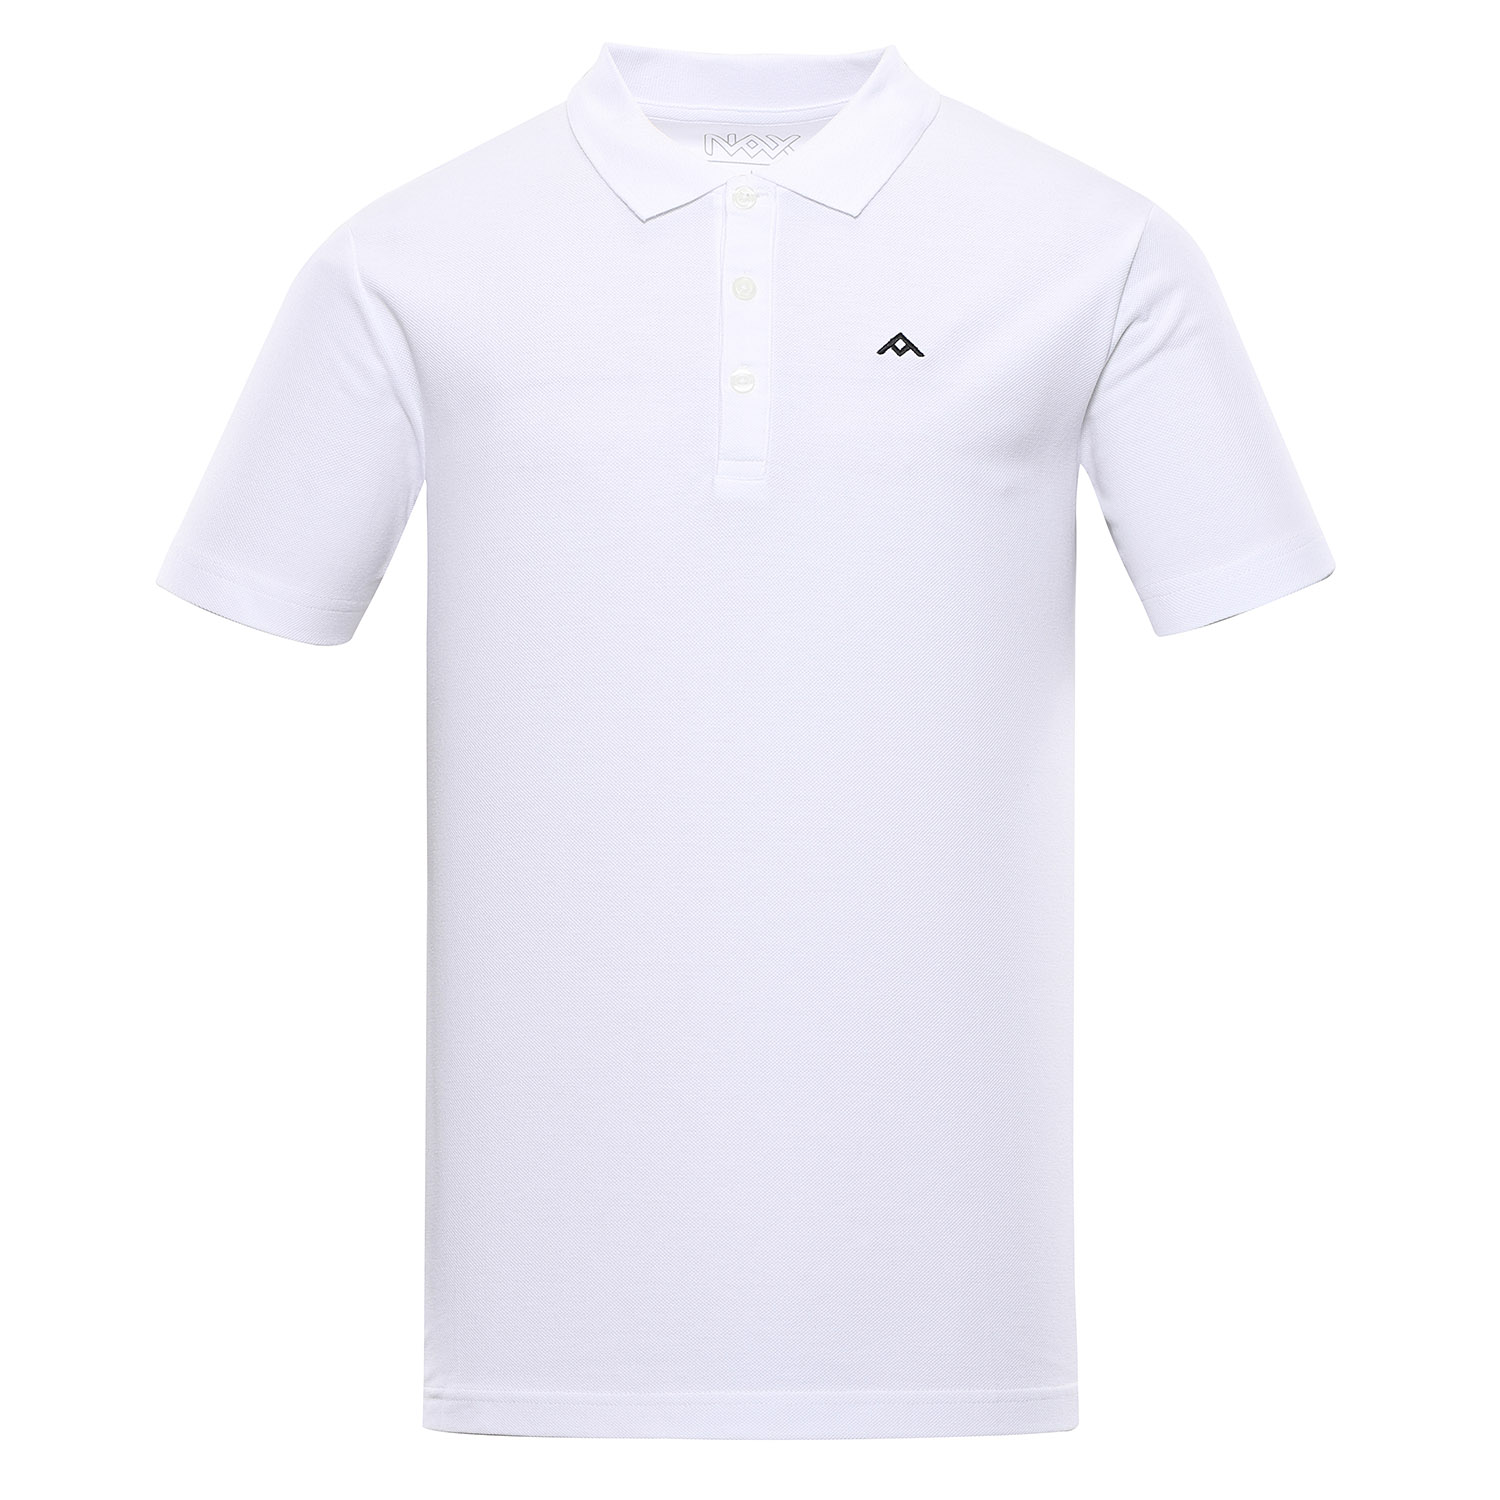 Men's T-shirt nax NAX LOPAX white